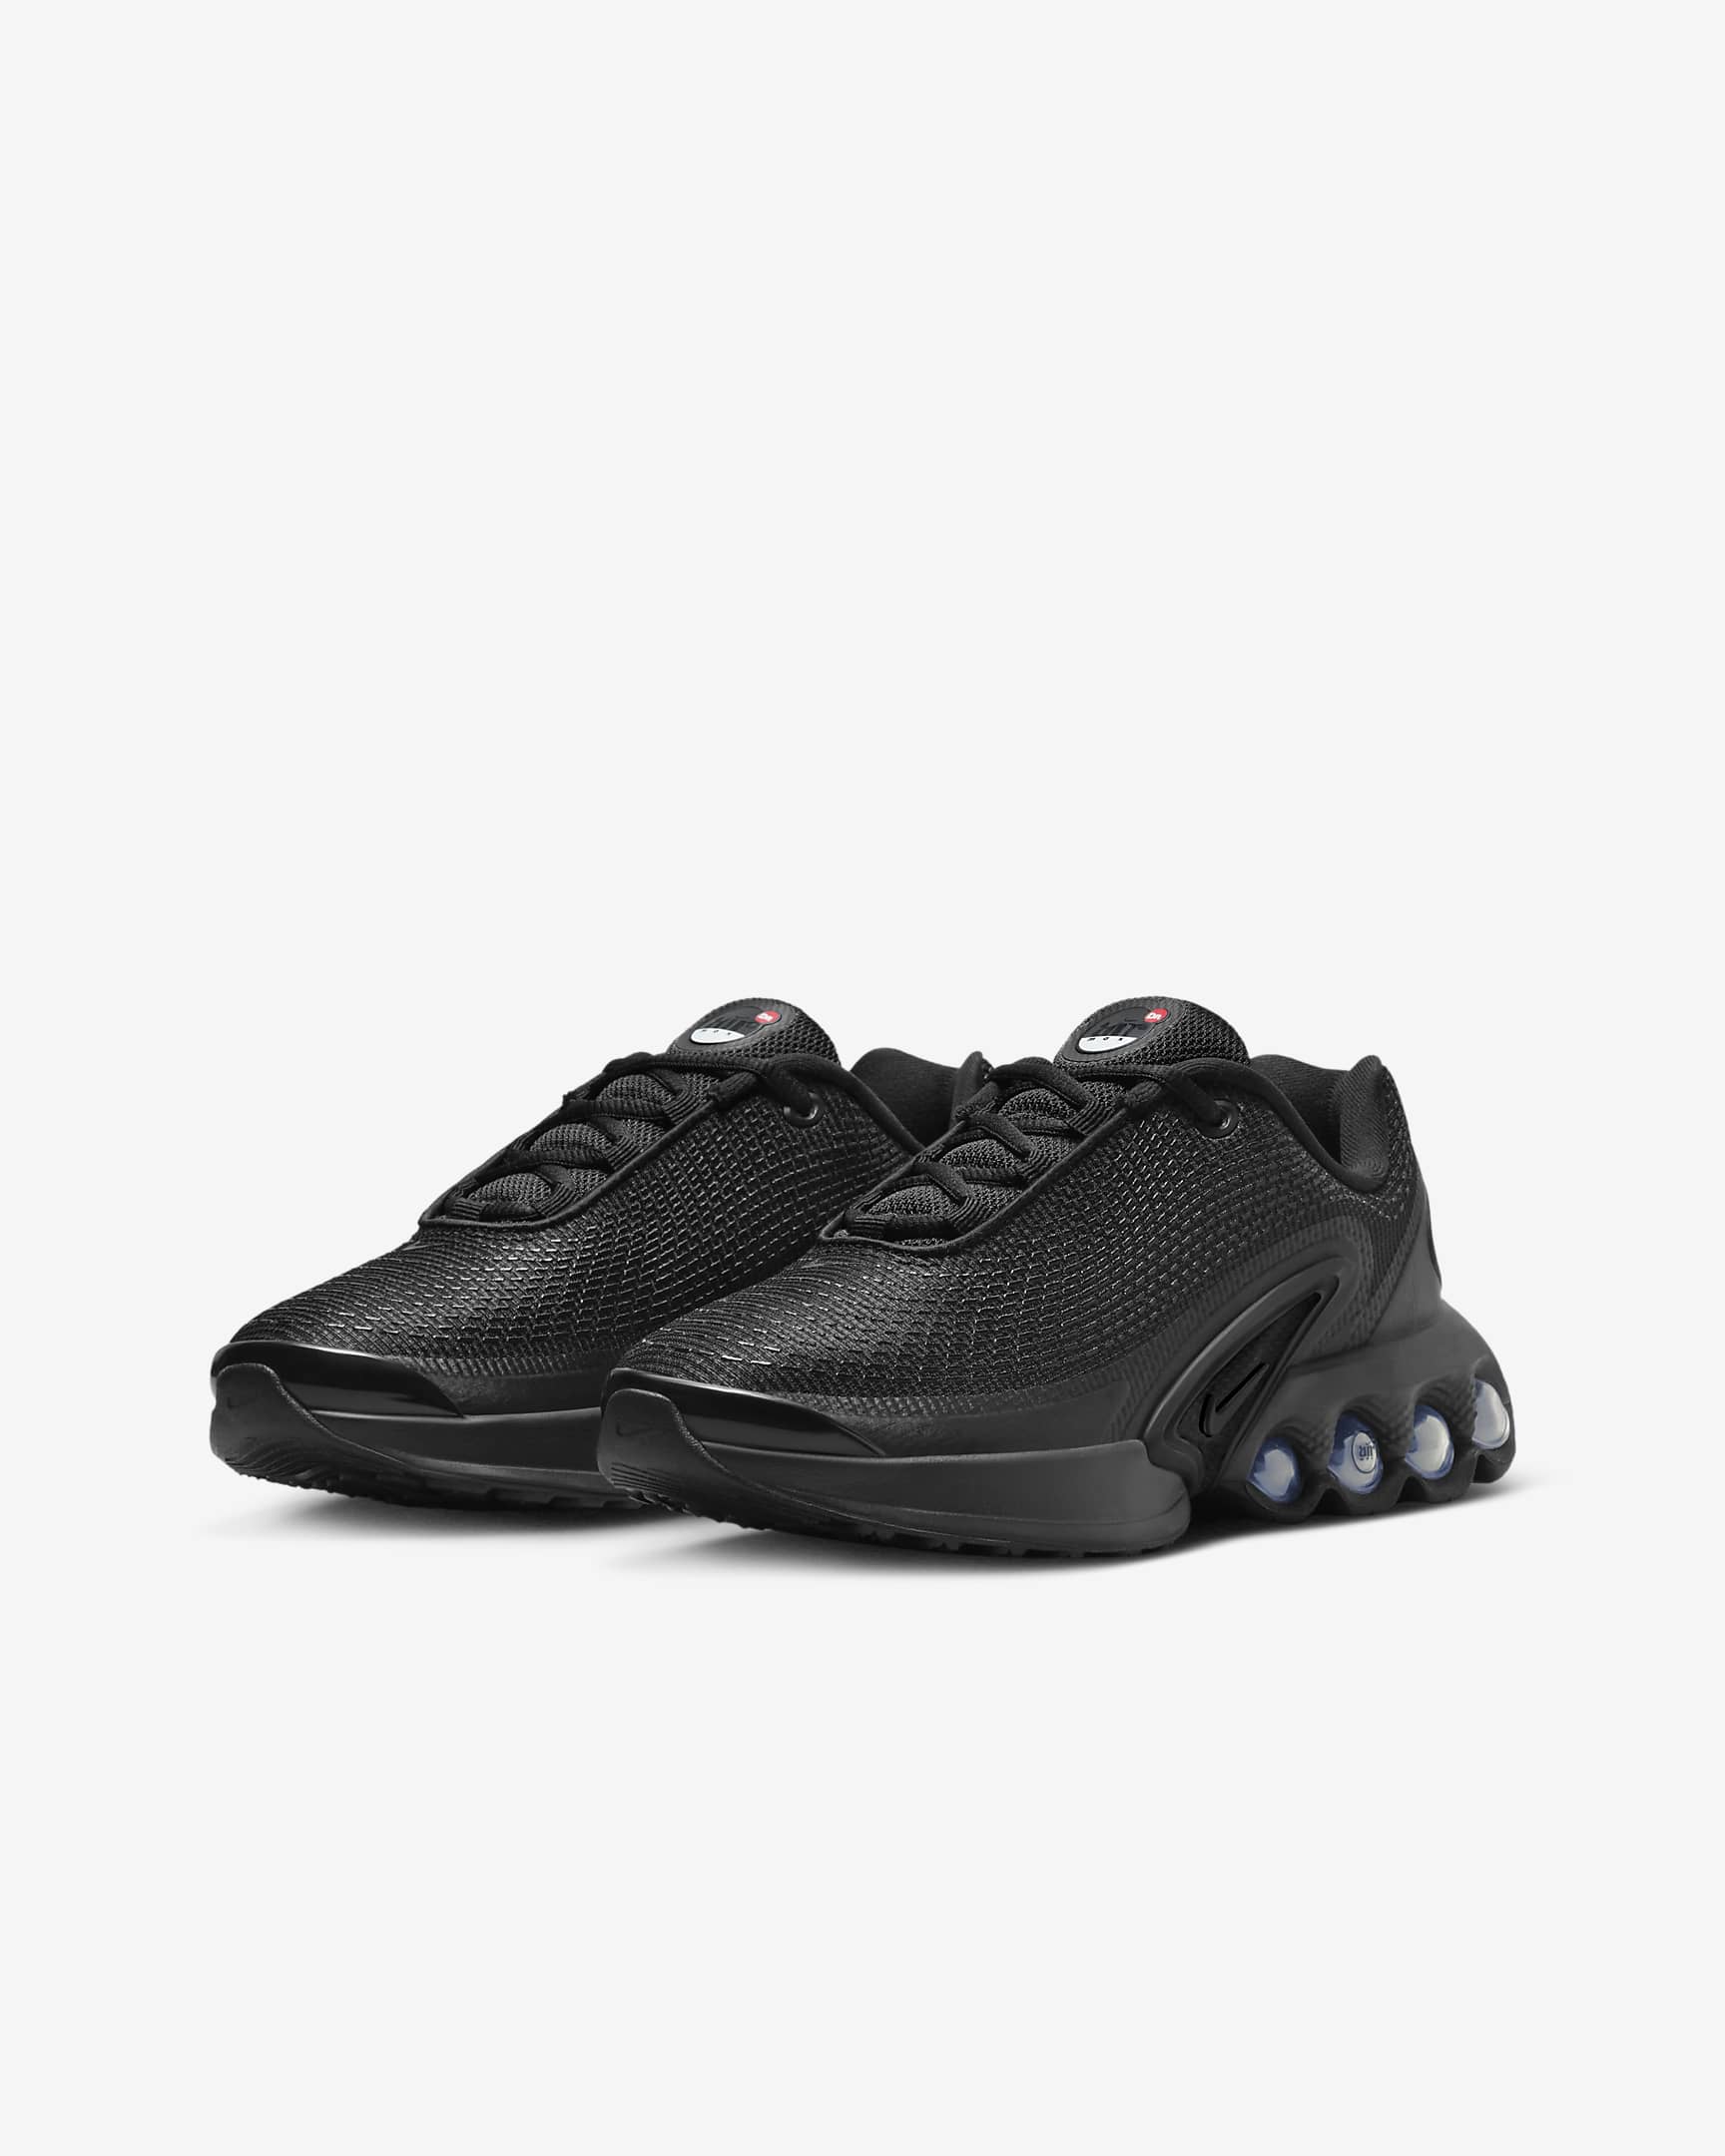 Chaussure Nike Air Max Dn pour ado - Noir/Noir/Metallic Dark Grey/Noir